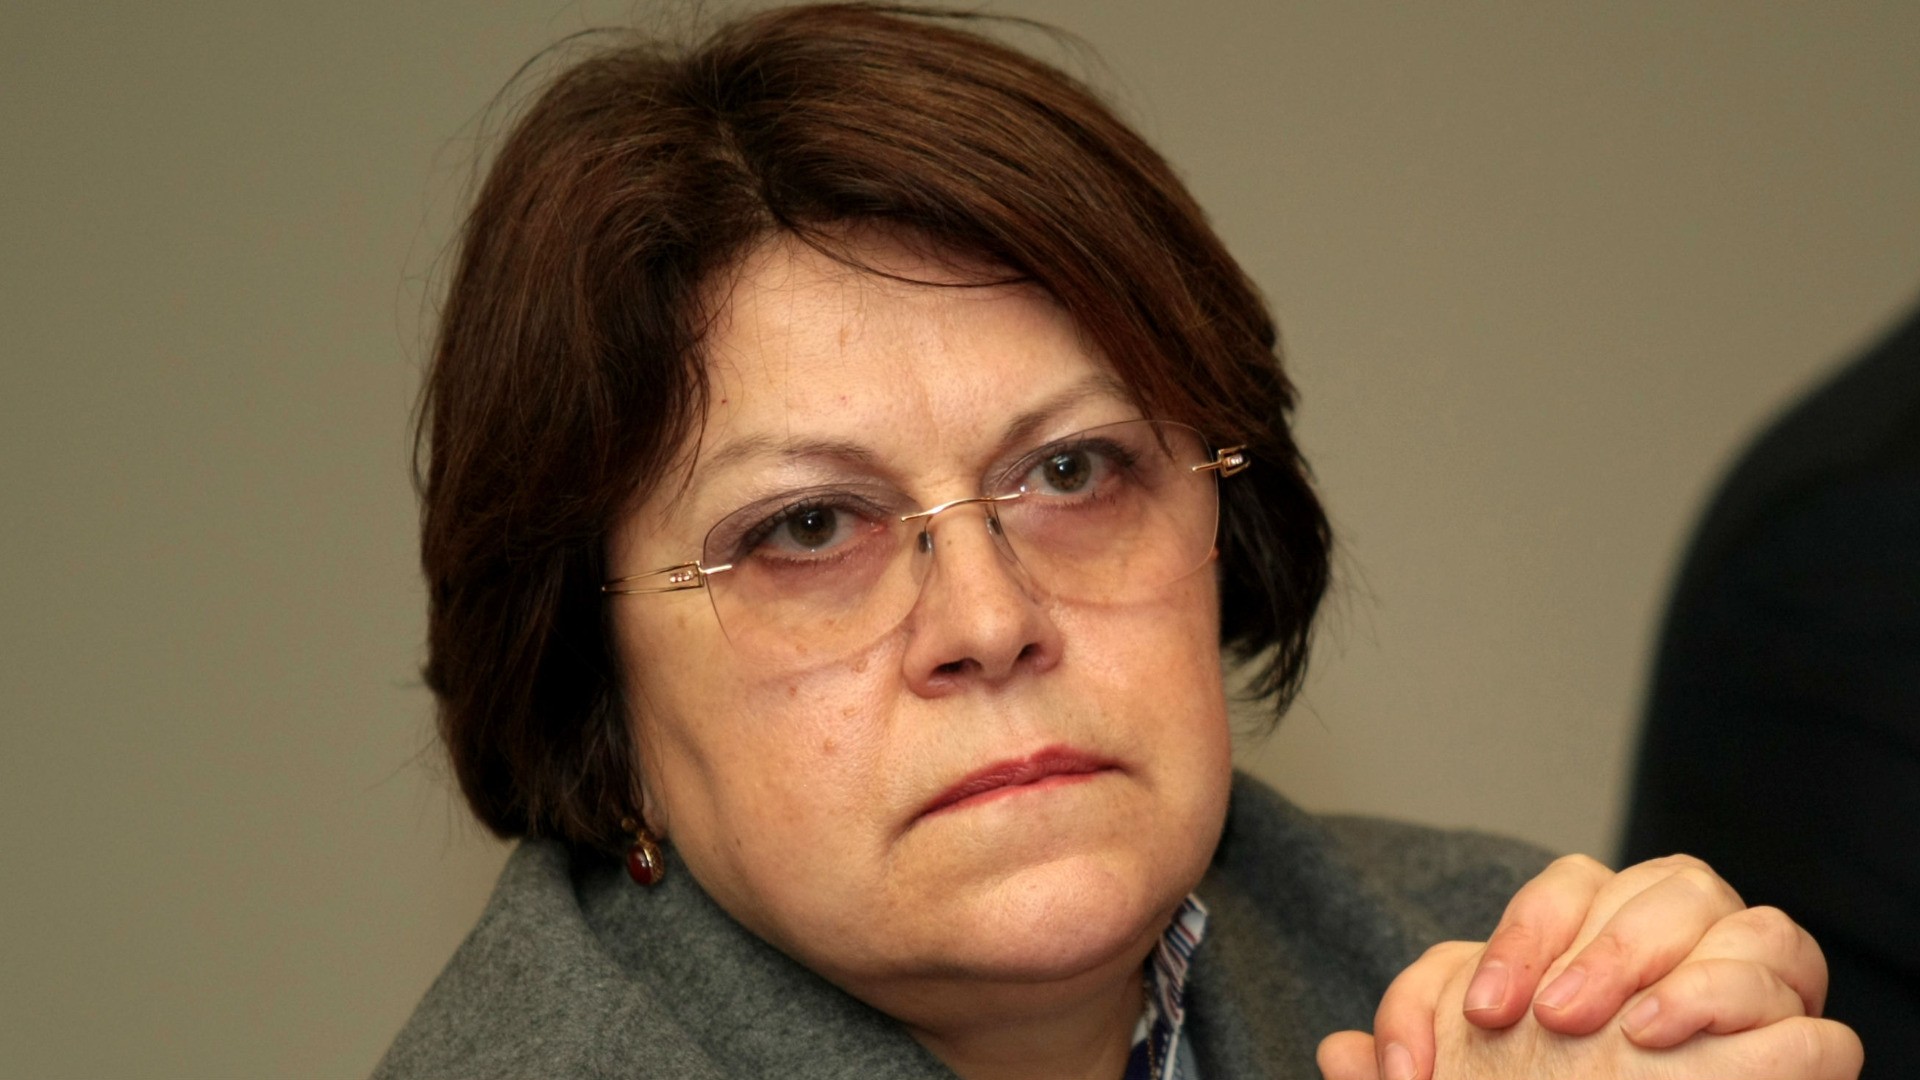  Дончева: В тази прокуратура са преторианци на Борисов
